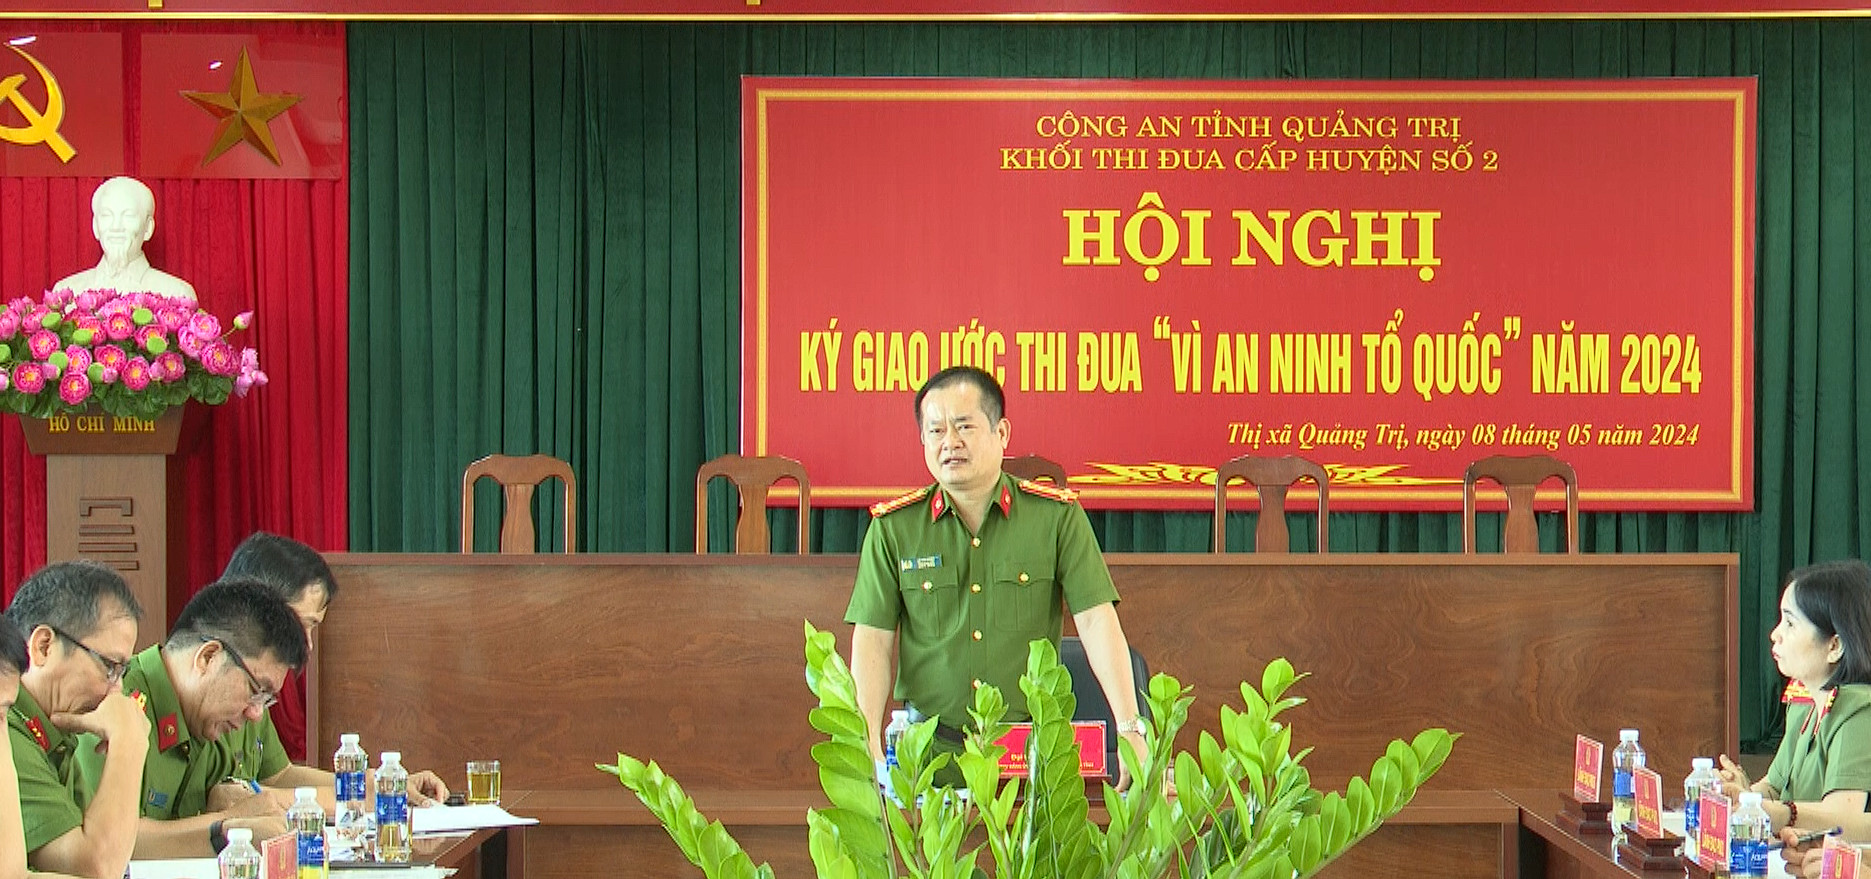 Đại tá Lê Phi Hùng, Phó Giám đốc Công an tỉnh Quảng Trị dự và chỉ đạo hội nghị